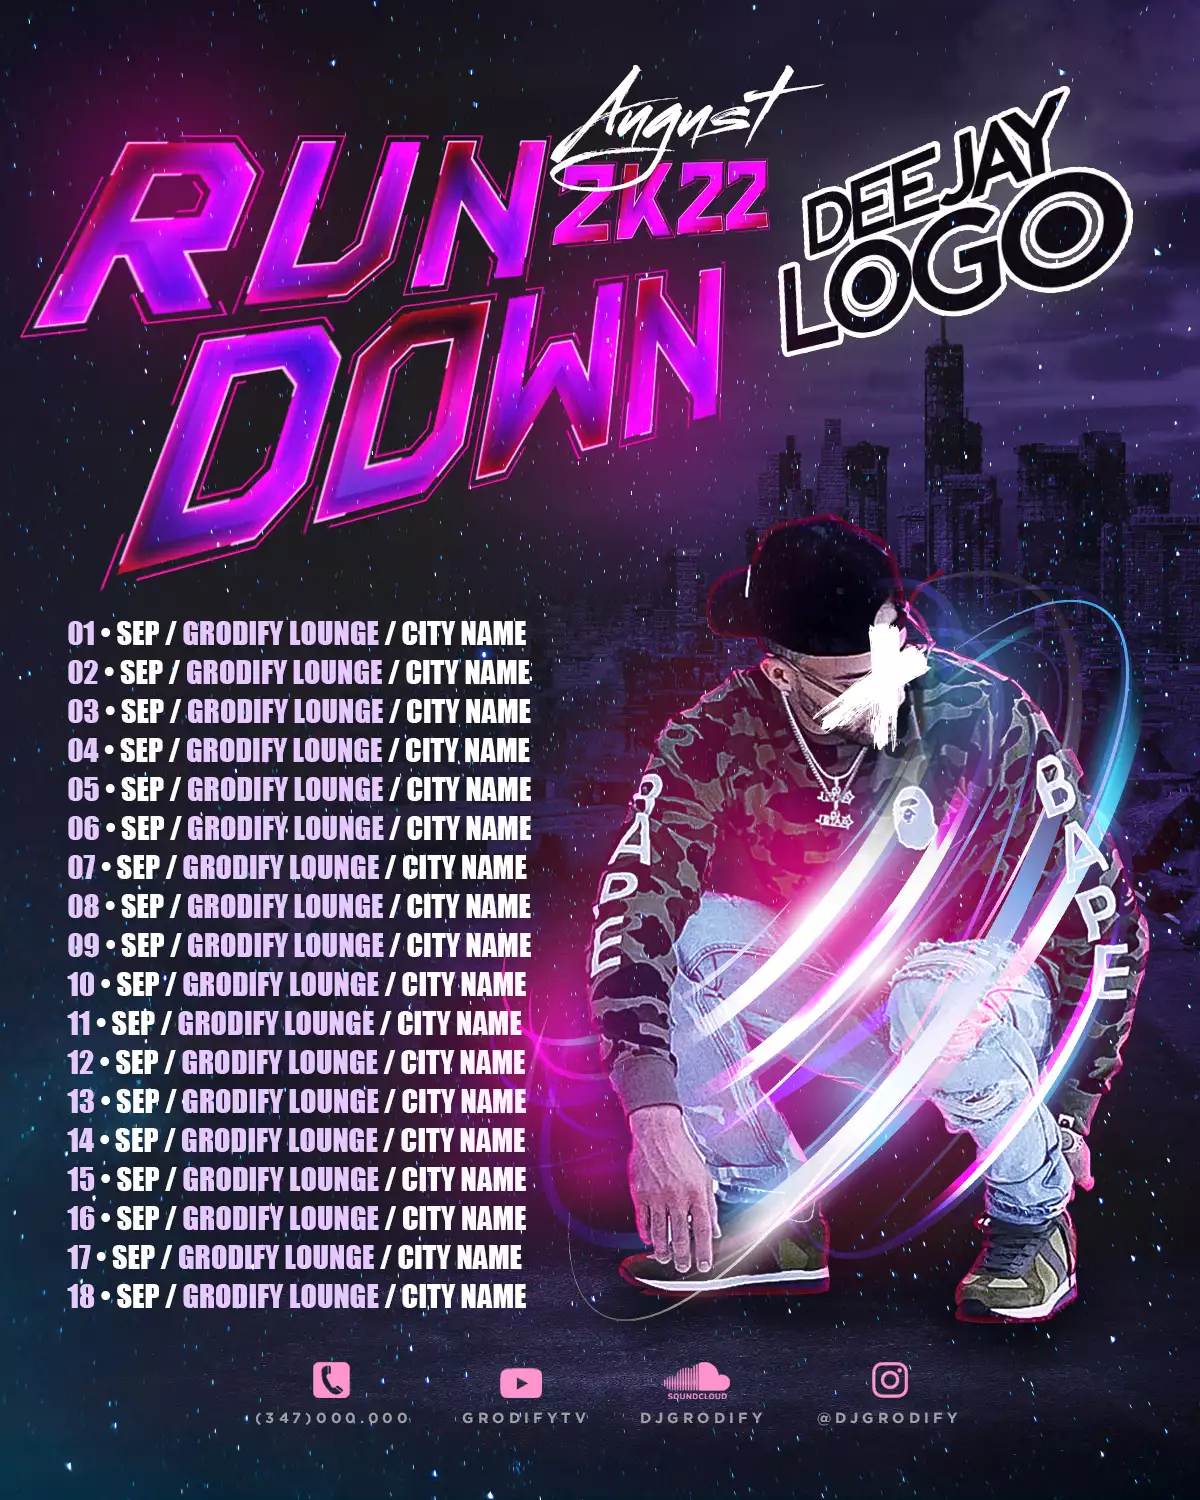 August 2K22 Run Down